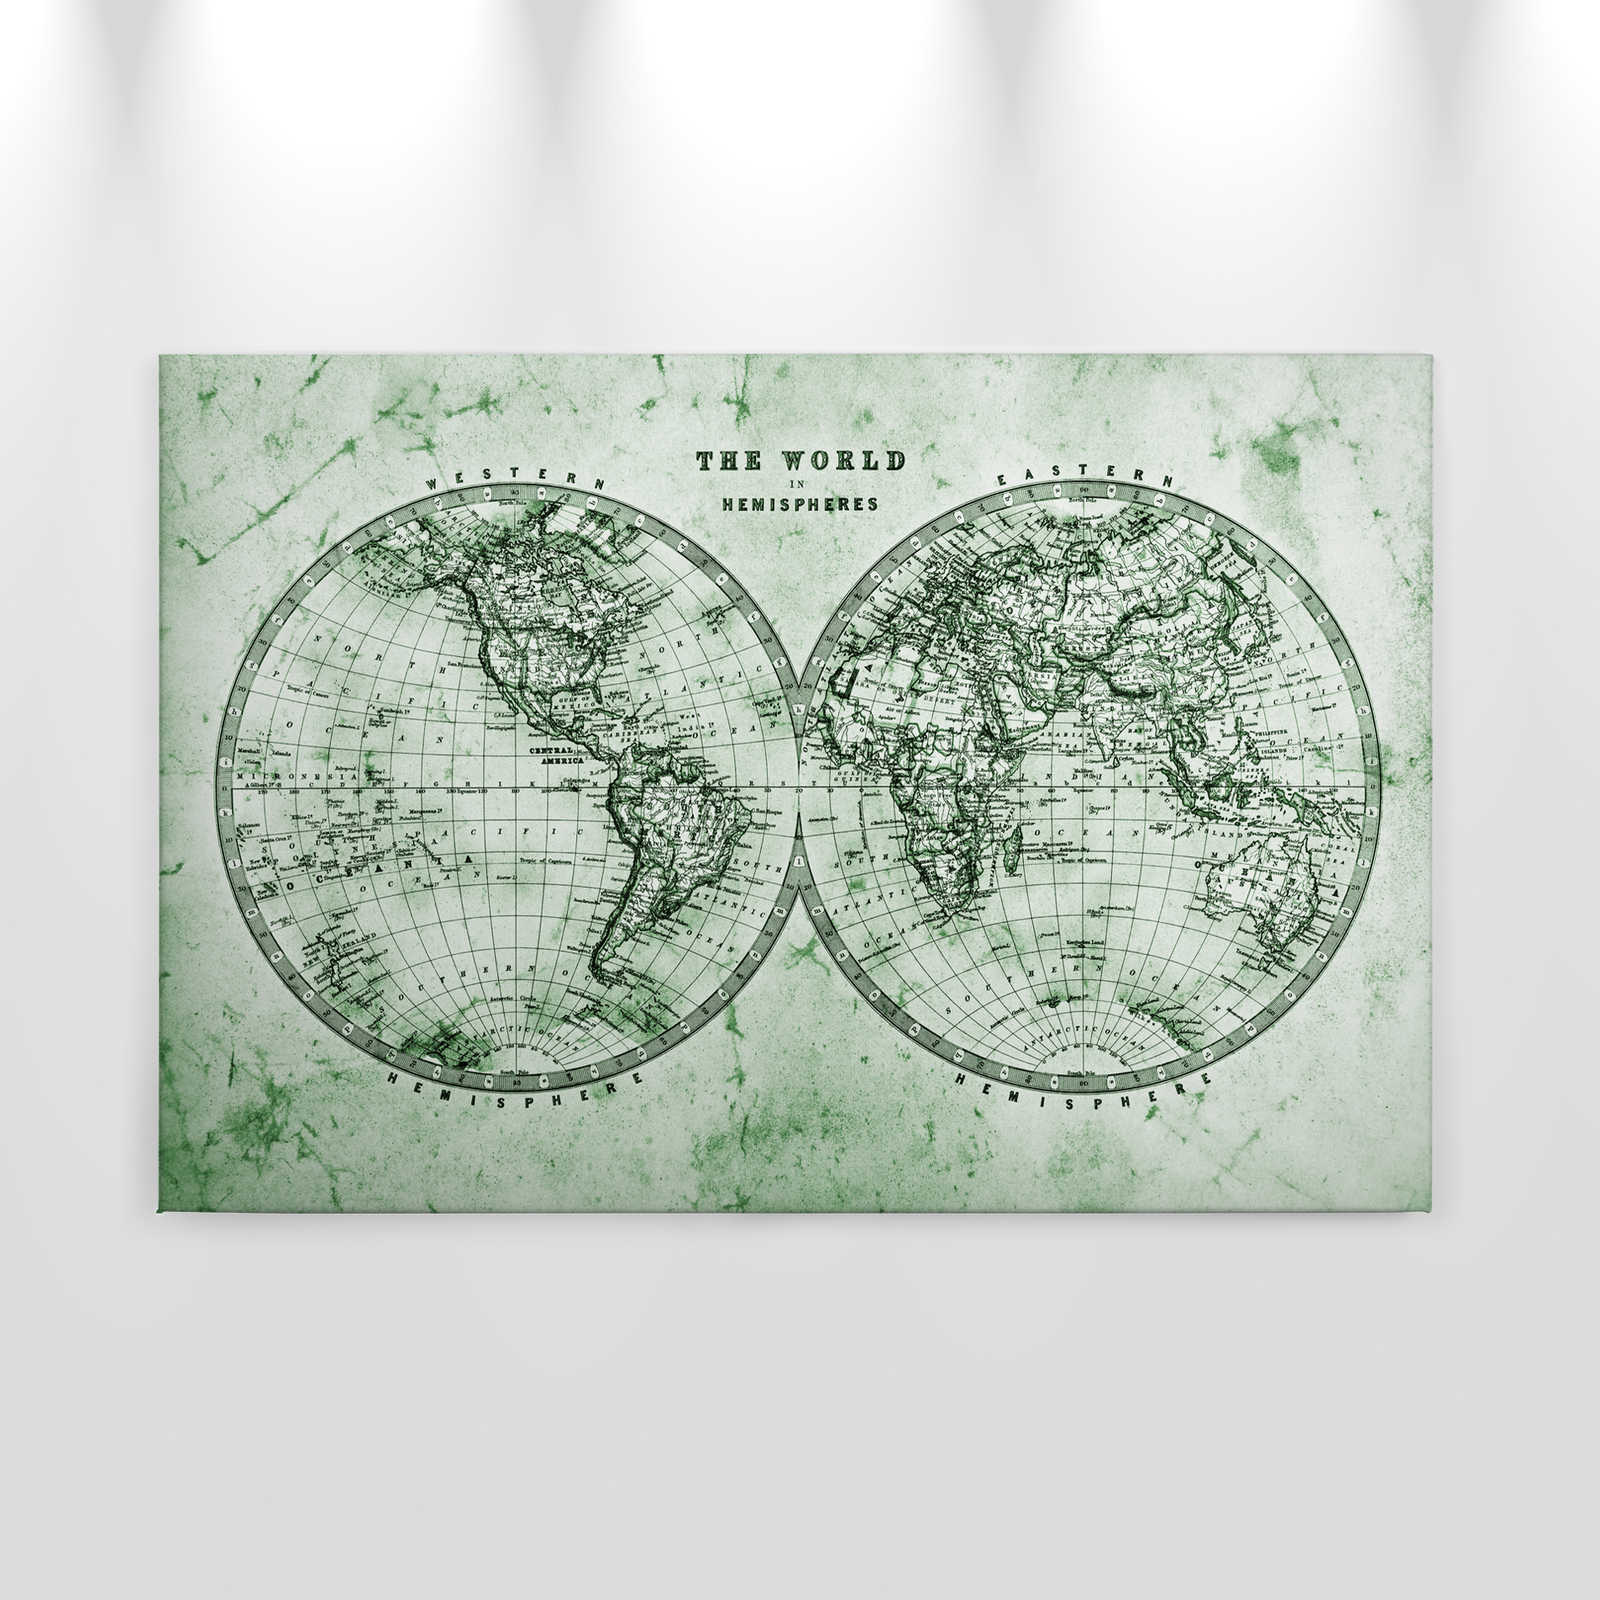             Toile avec carte du monde vintage en hémisphères | vert, gris, blanc - 0,90 m x 0,60 m
        